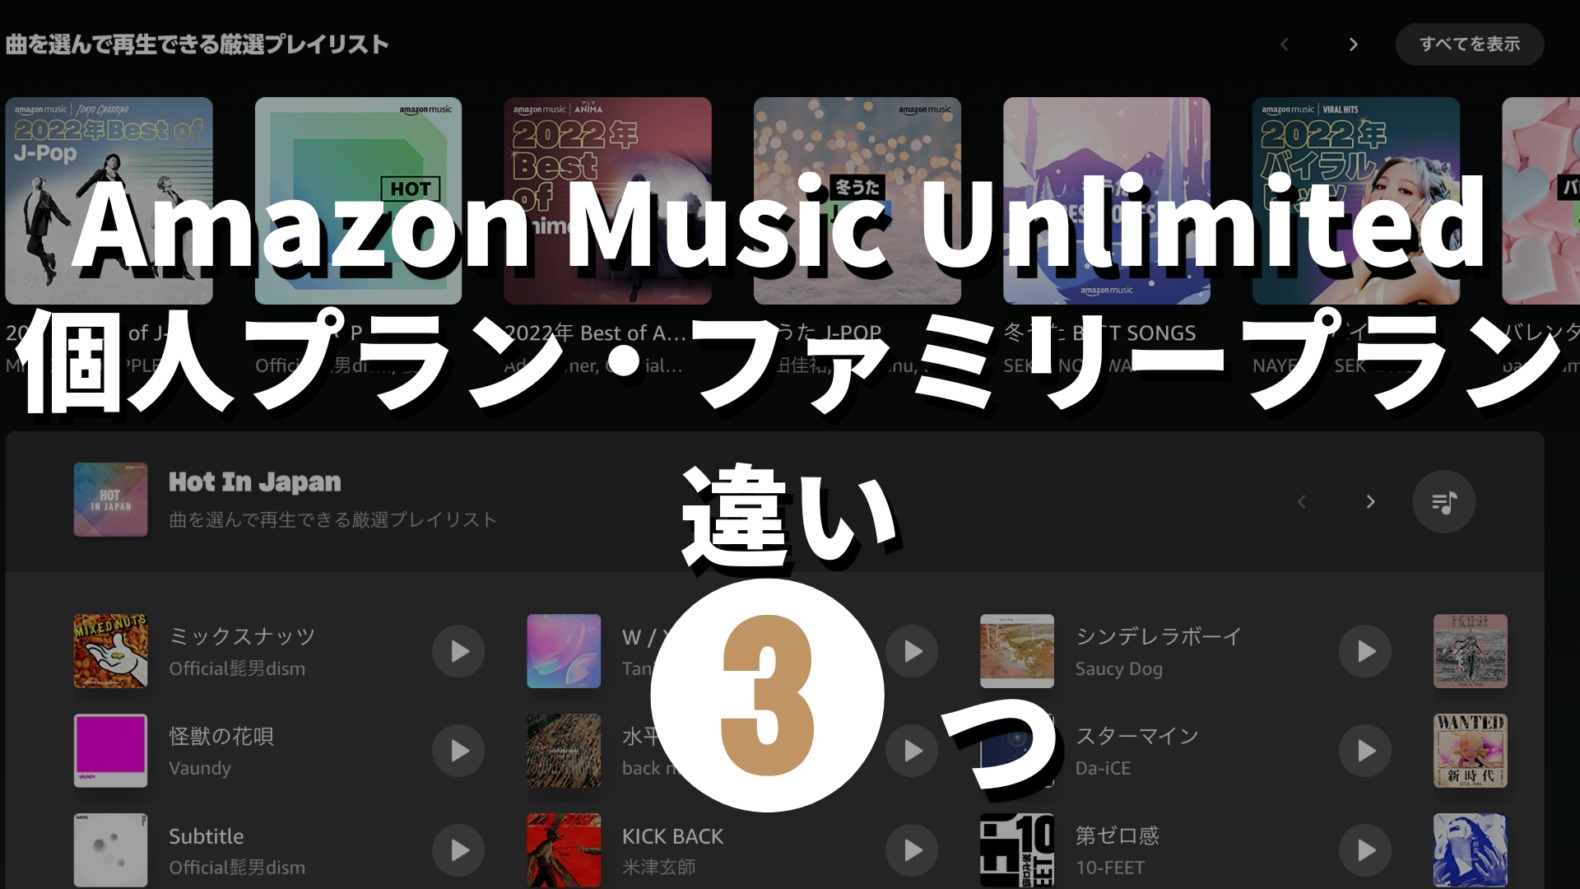 Amazon Music Unlimited個人プランファミリープラン違い記事のサムネイル画像